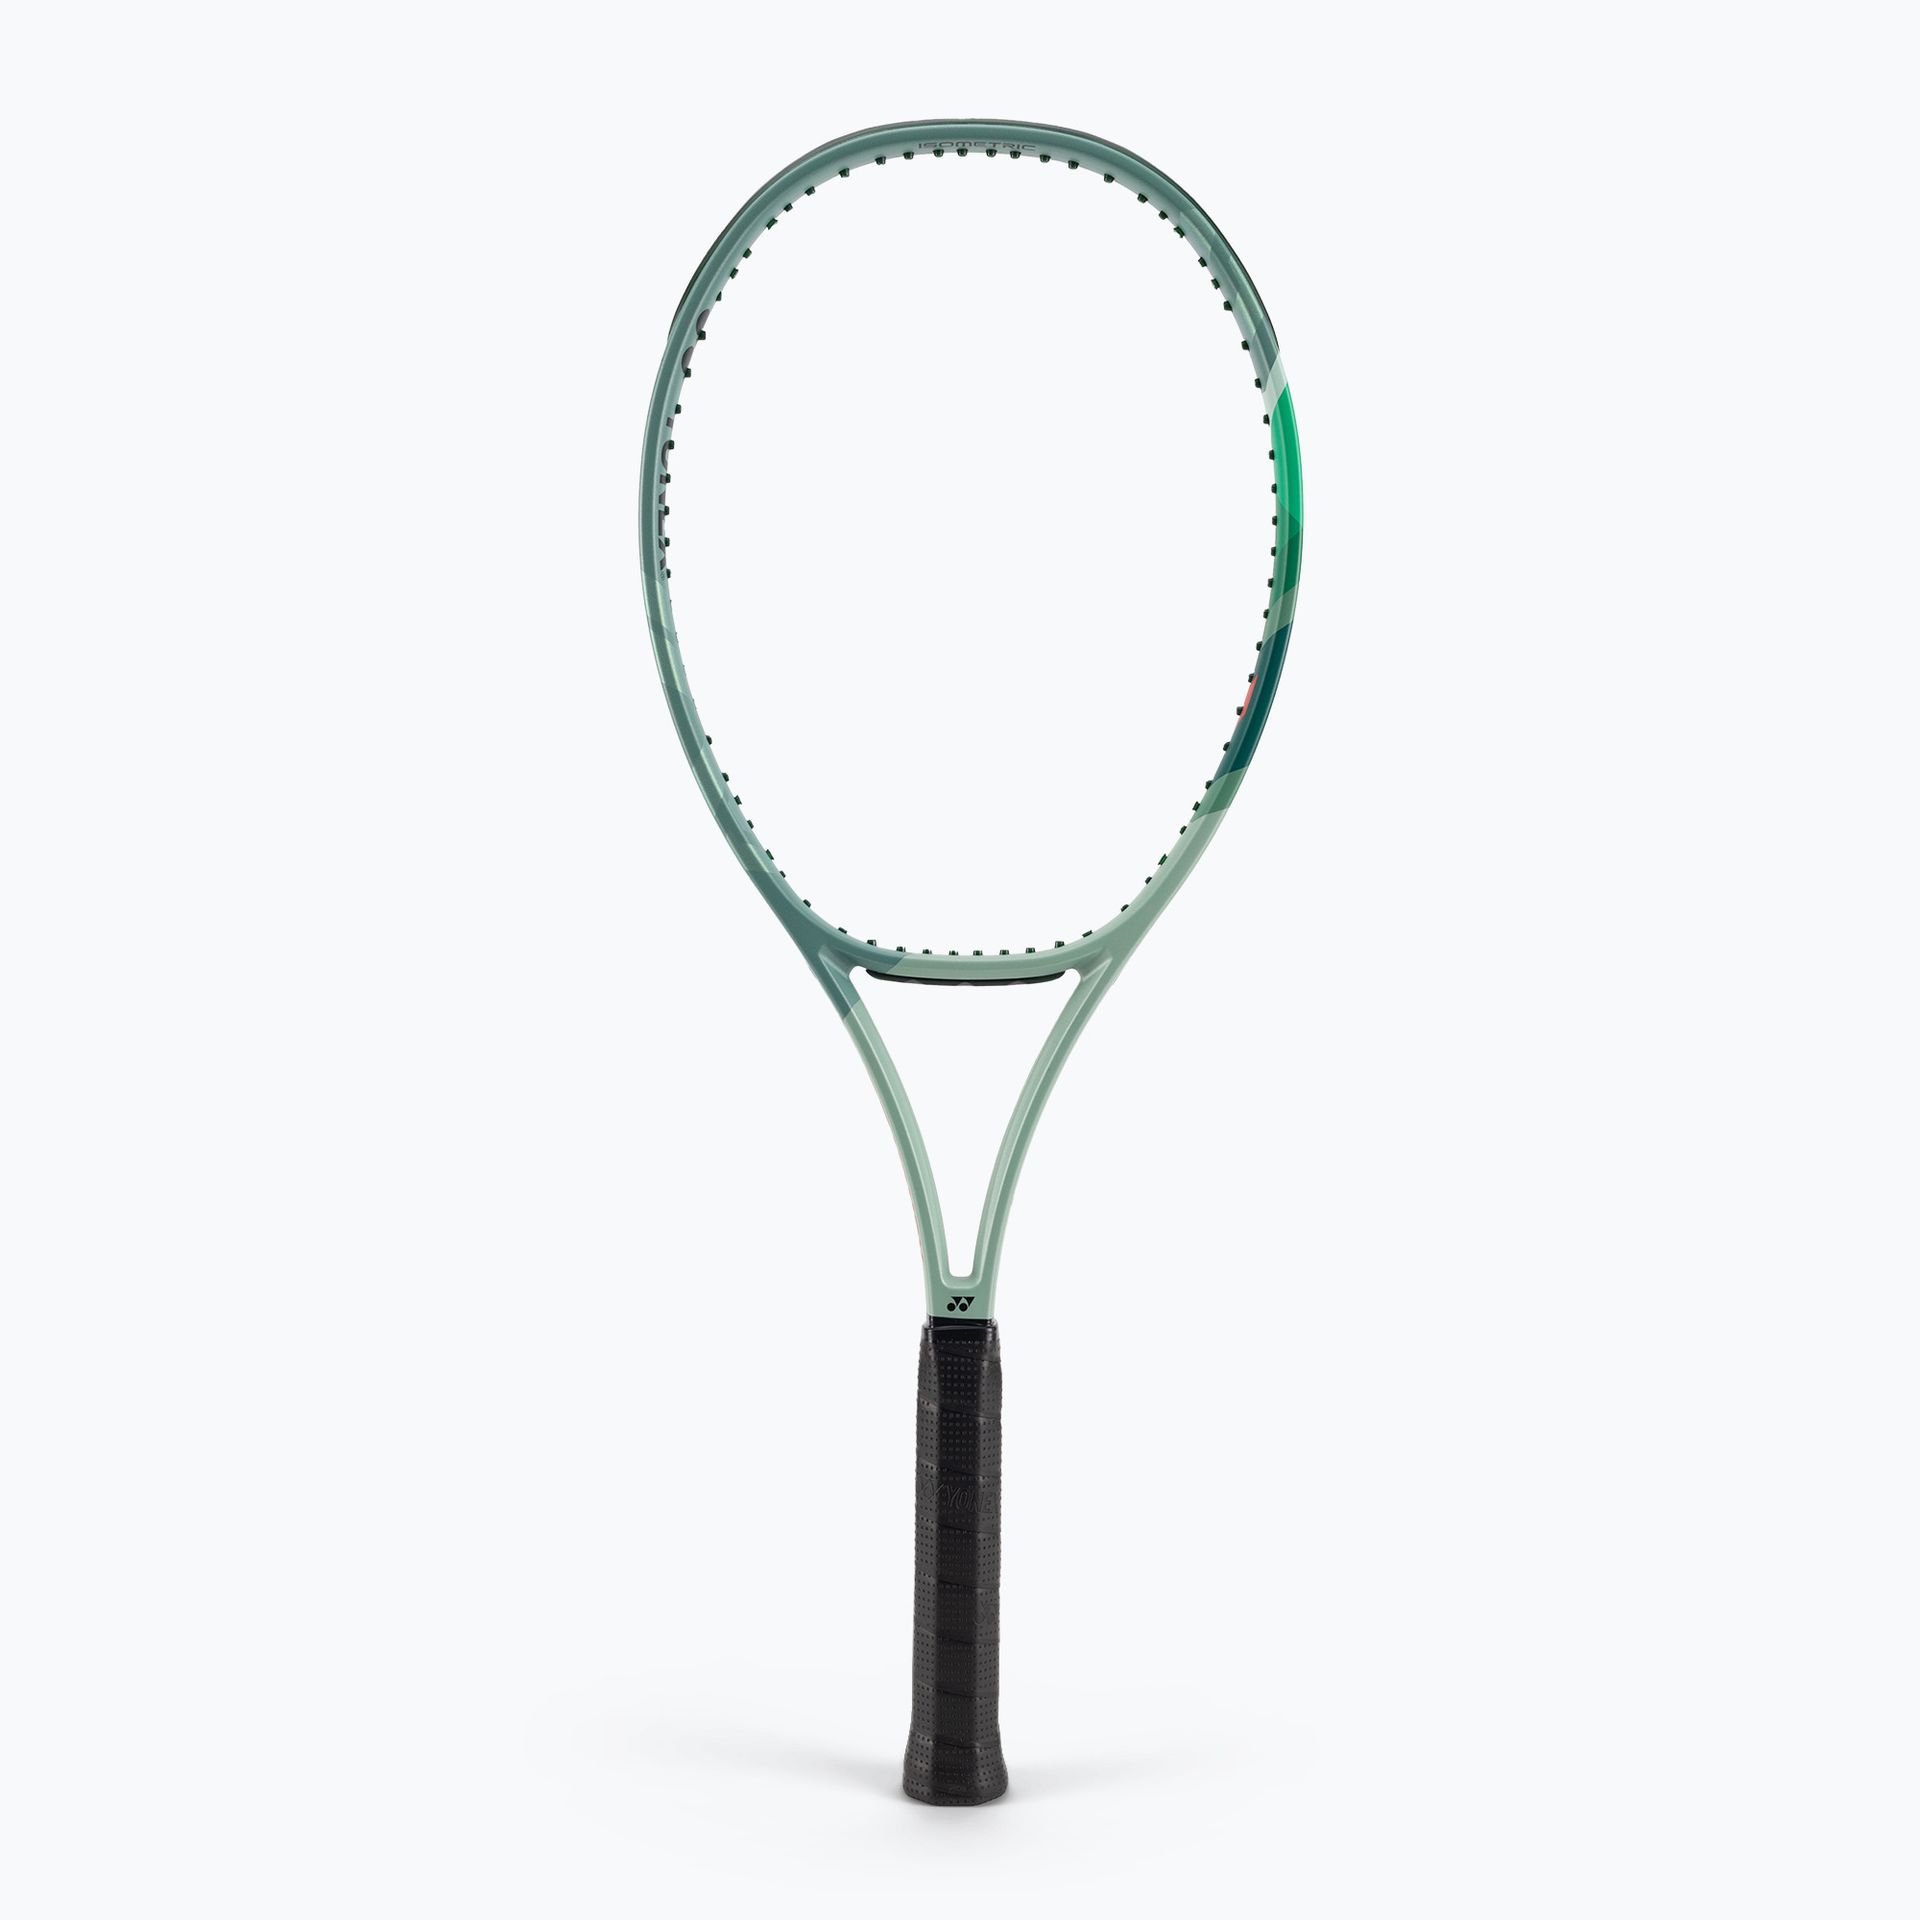 Rakieta tenisowa YONEX Percept 100 olive green